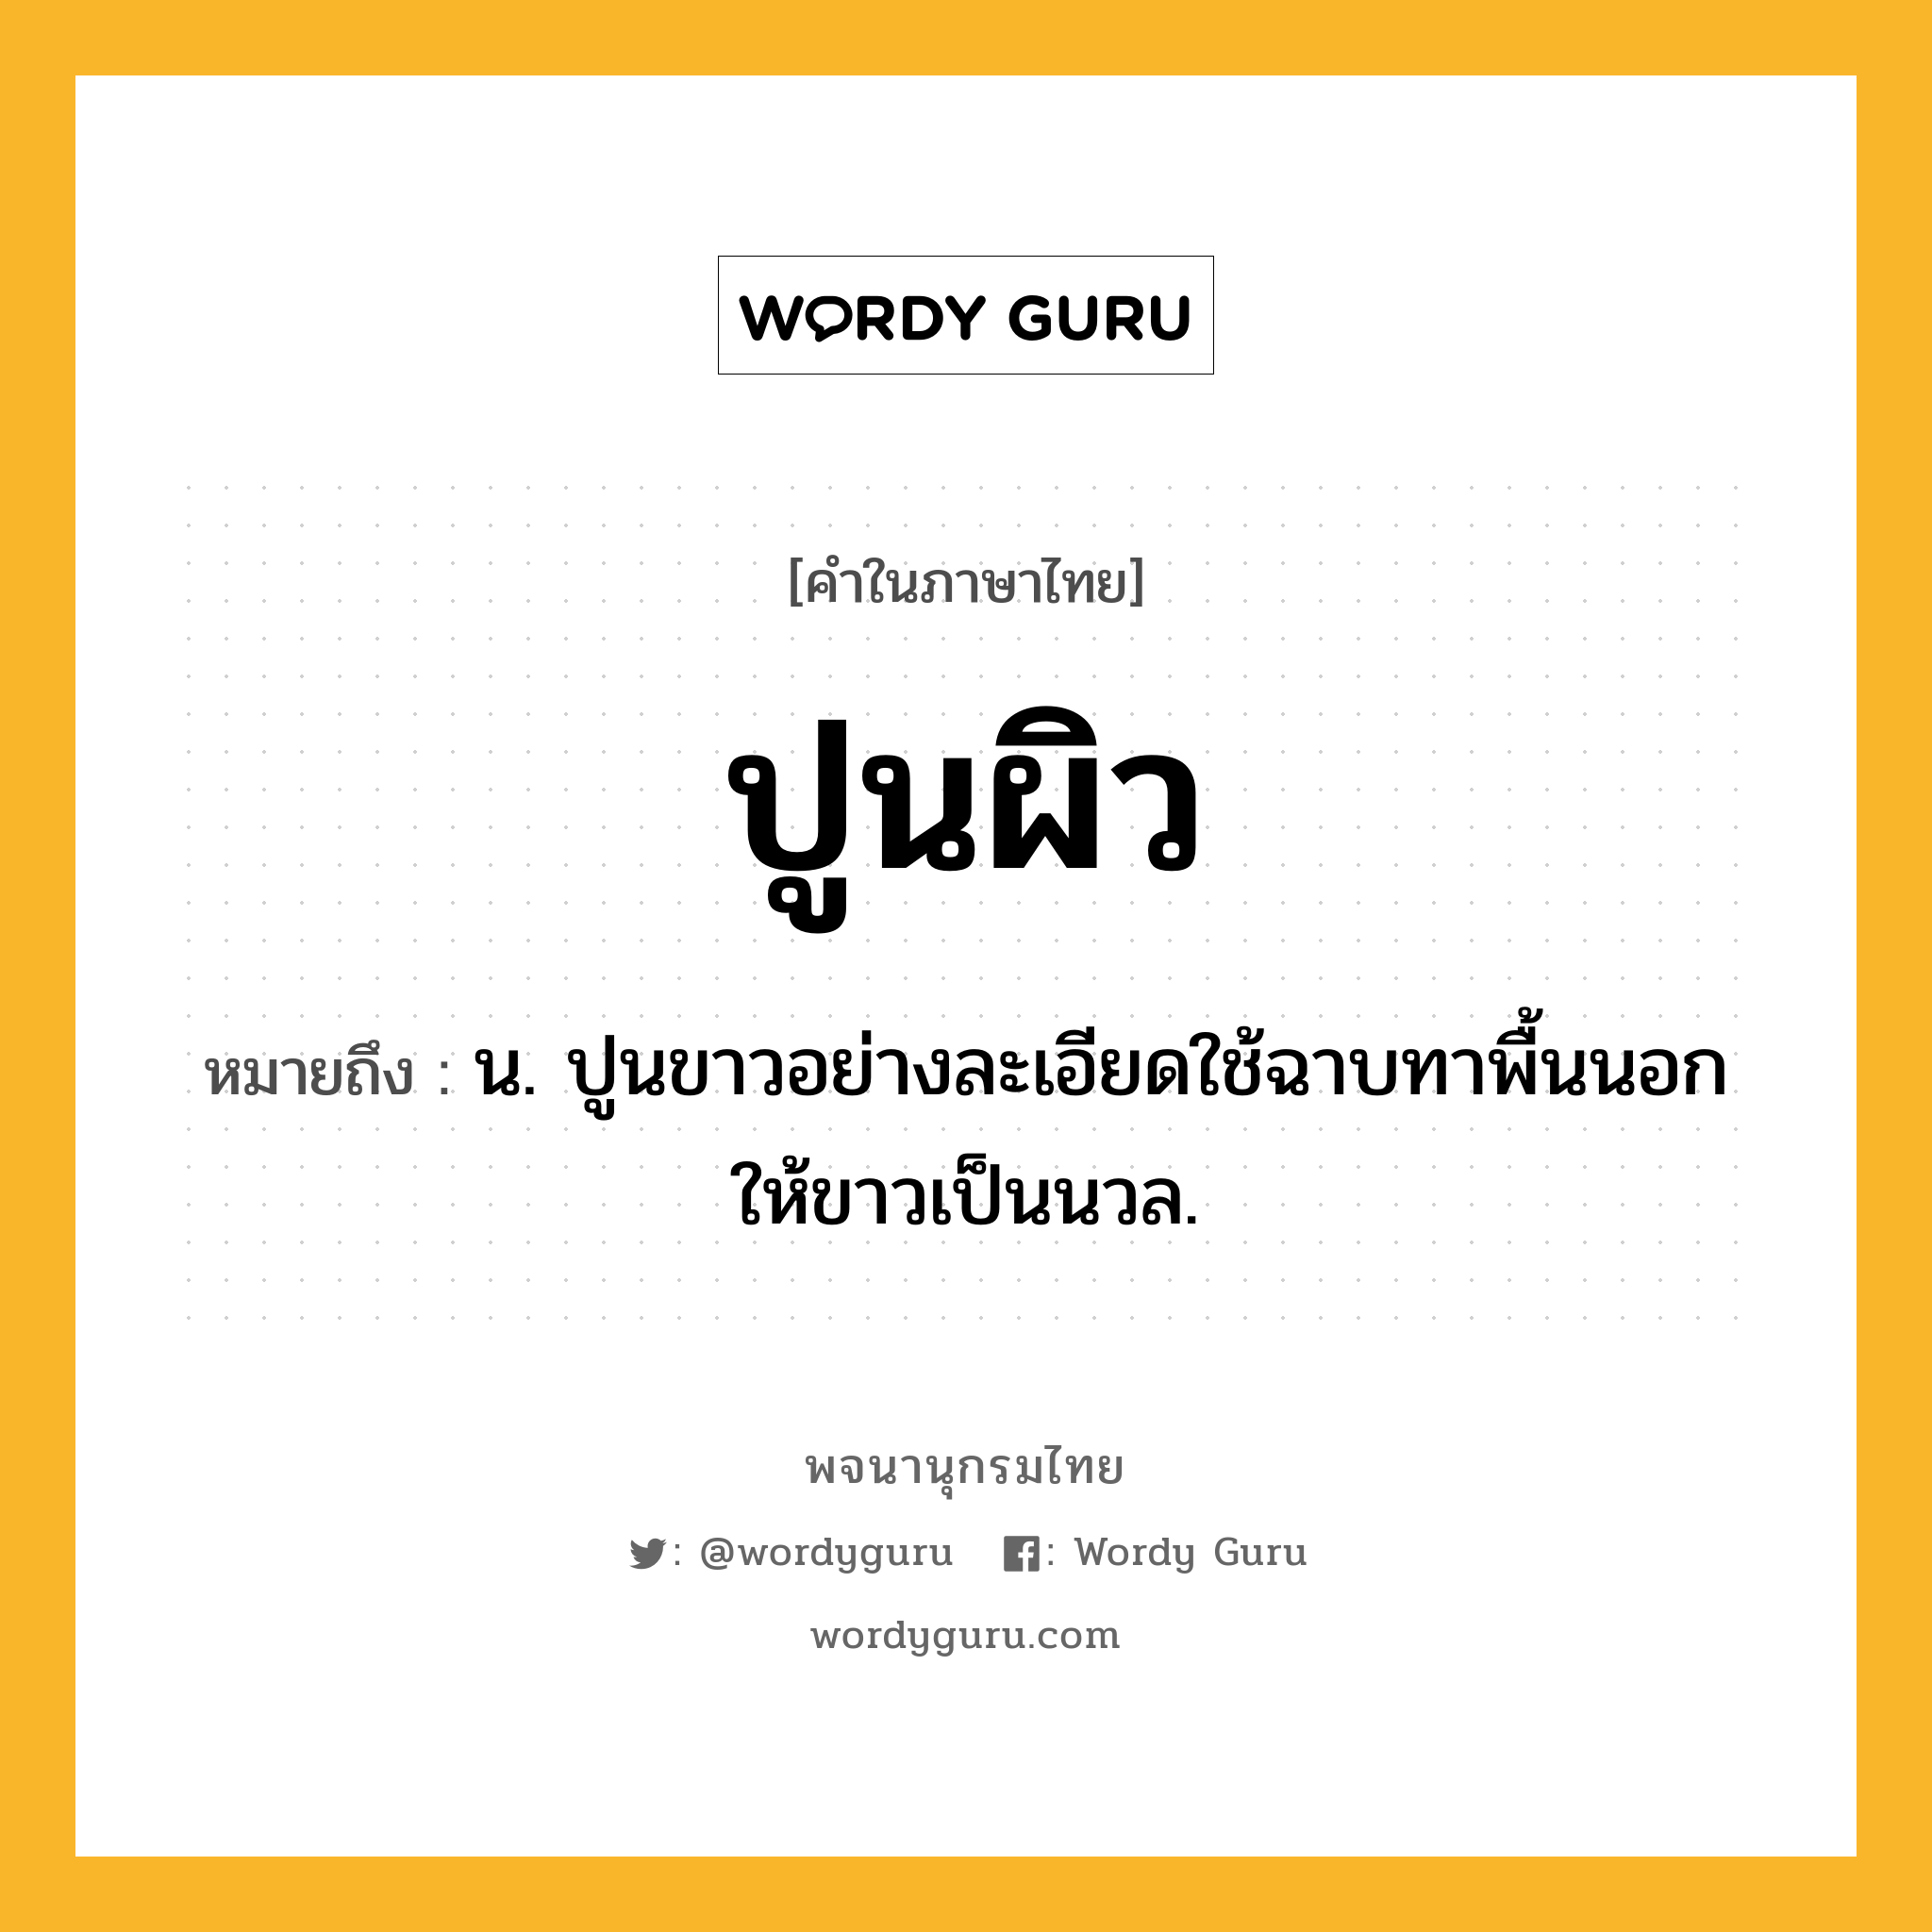 ปูนผิว ความหมาย หมายถึงอะไร?, คำในภาษาไทย ปูนผิว หมายถึง น. ปูนขาวอย่างละเอียดใช้ฉาบทาพื้นนอกให้ขาวเป็นนวล.